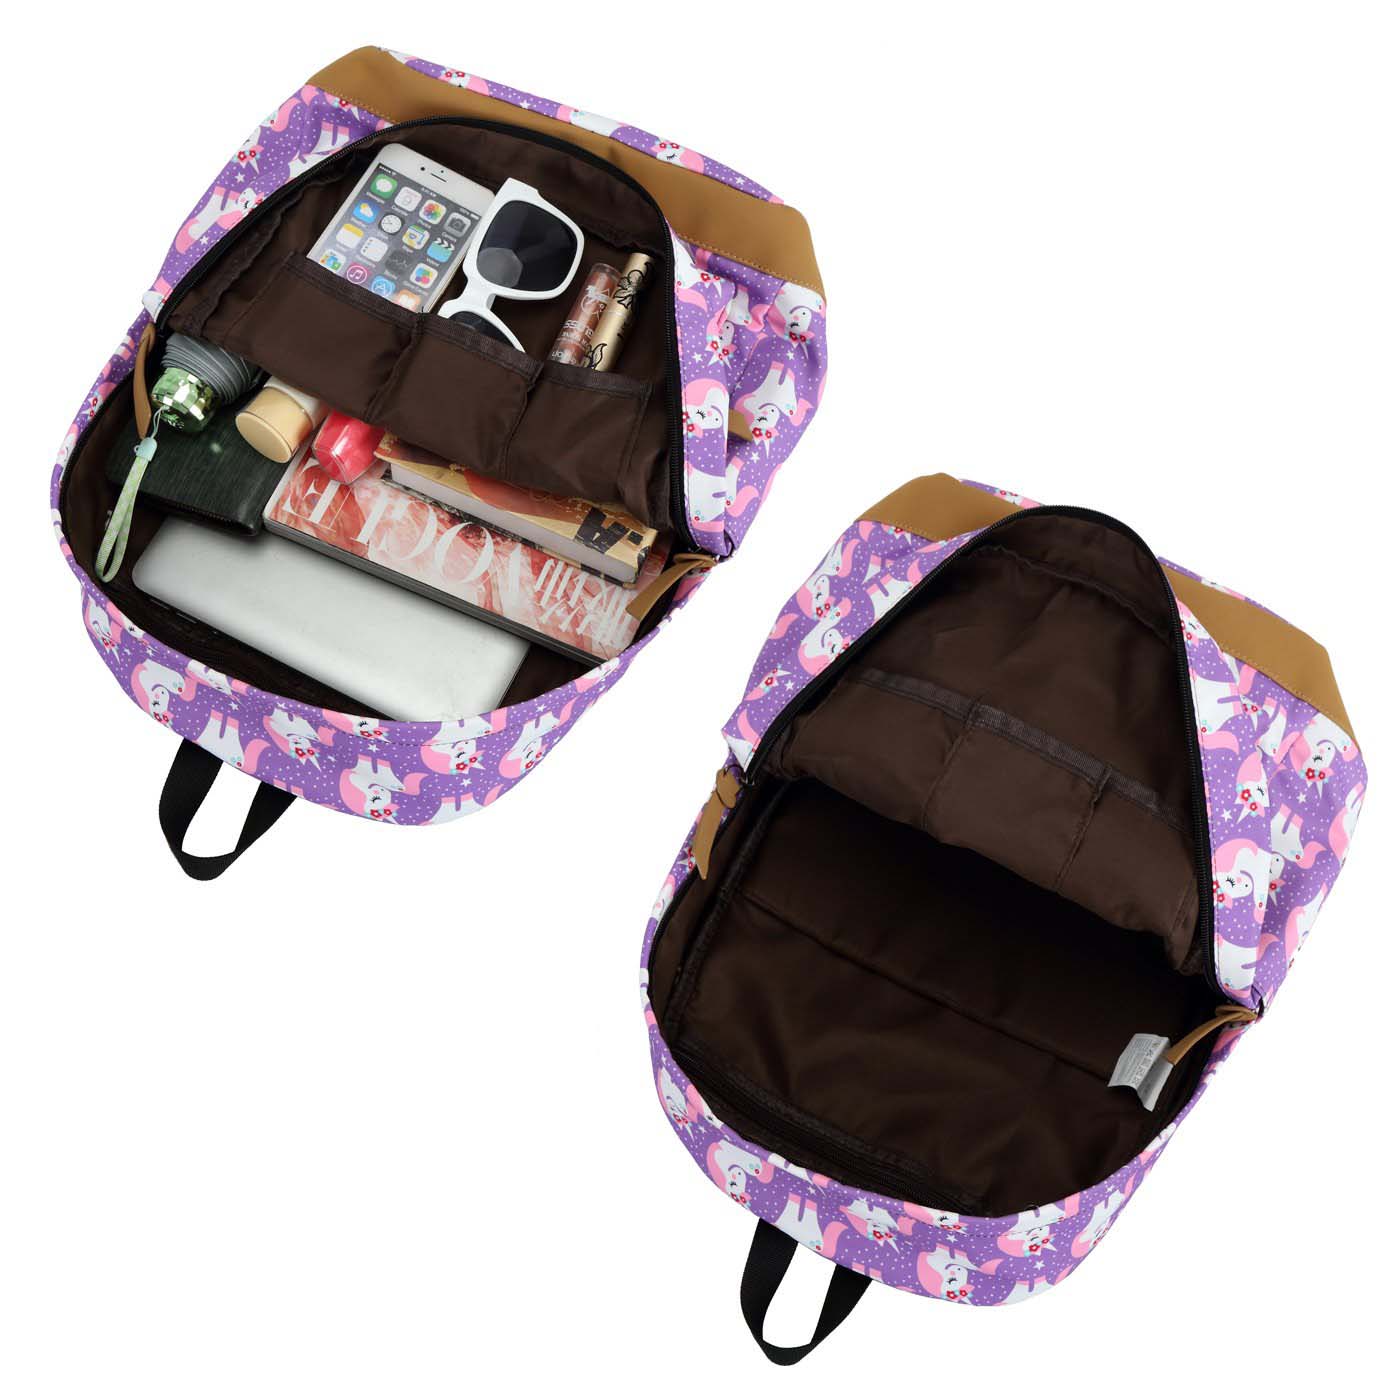 100% Original School Bags - School Backpack for Girls Cute Teens School Bag Bookbags Set Travel Daypack – Twinkling Star